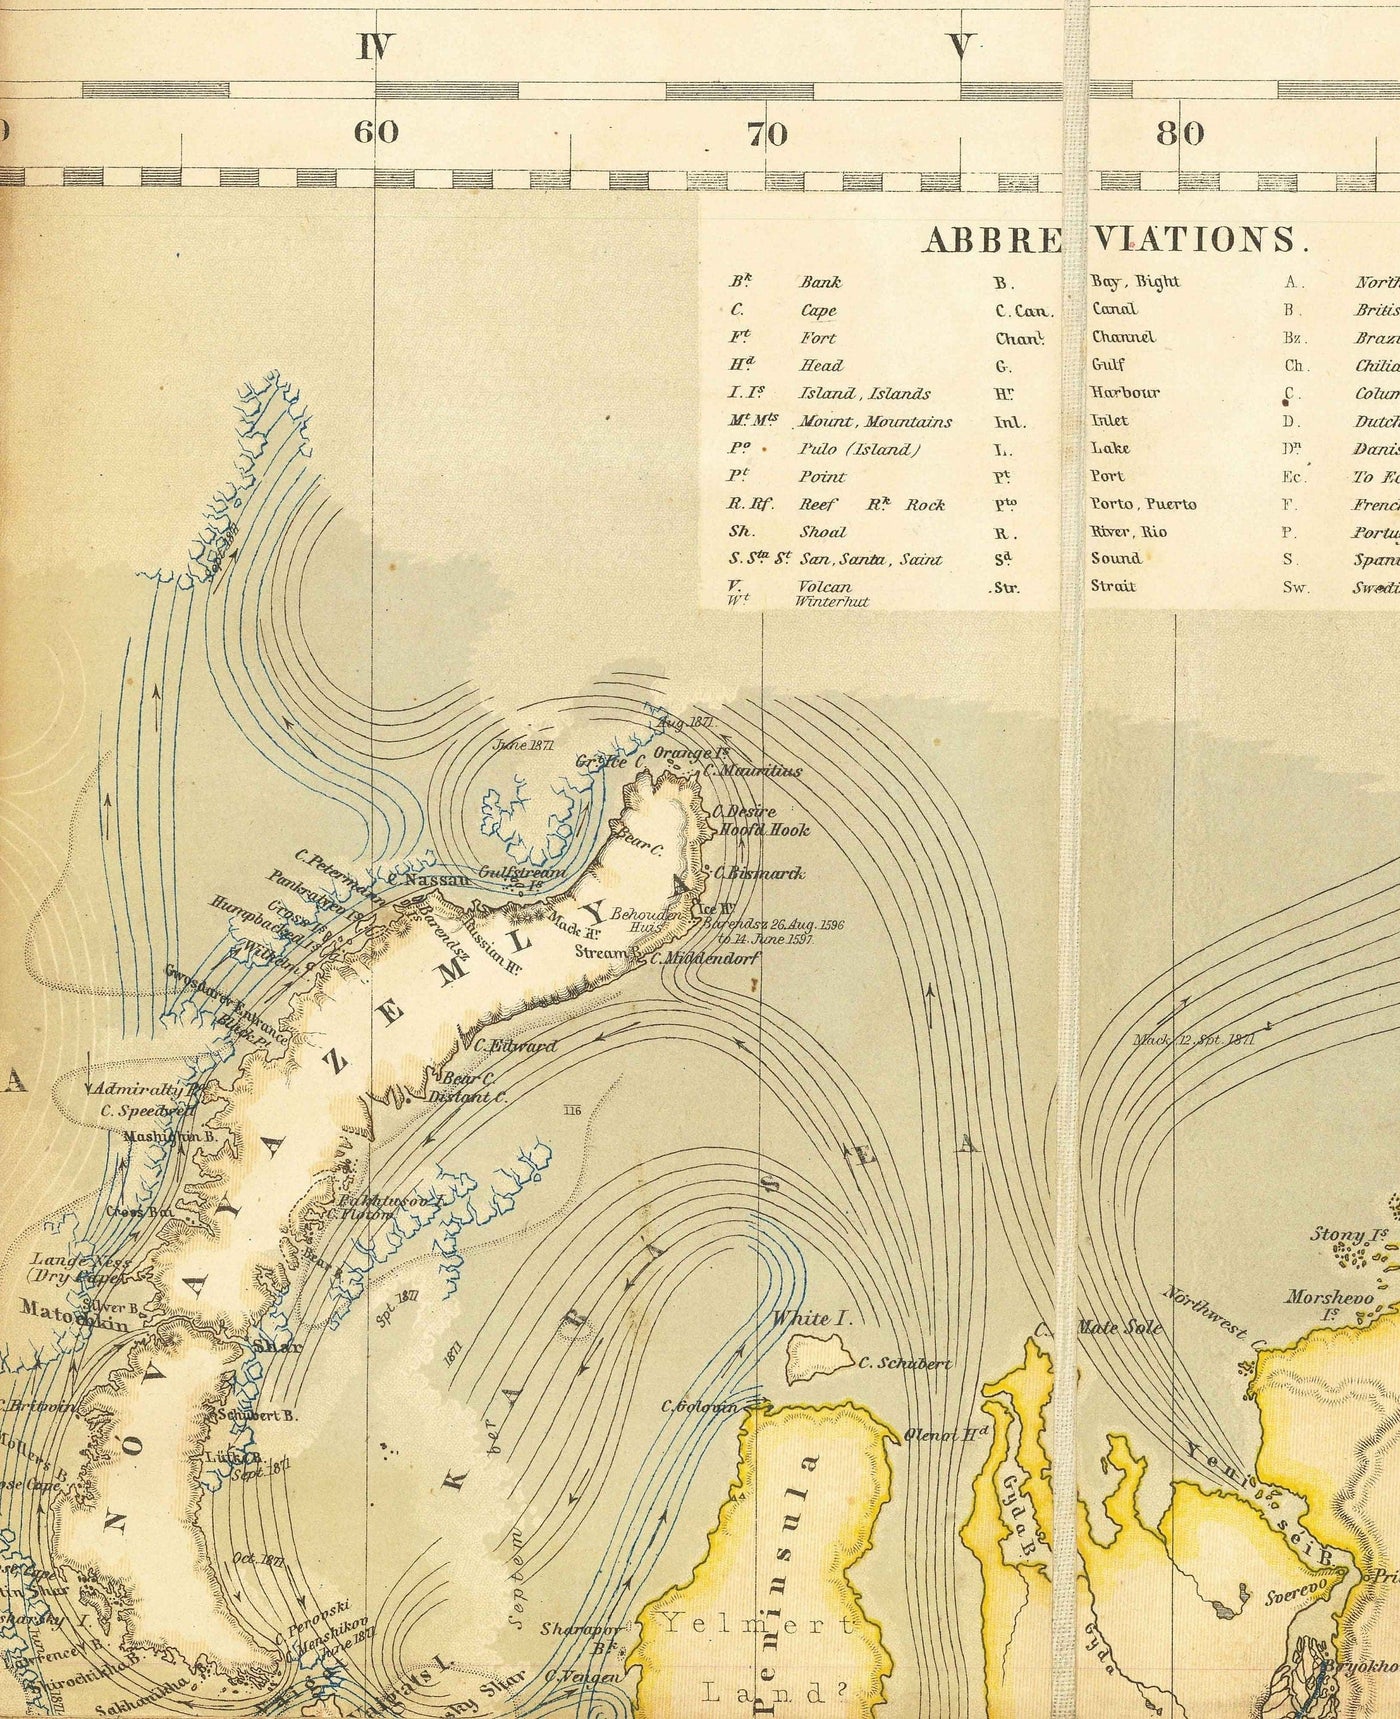 Old Shipping Lanes World Map, 1873 von Berghaus - Riesenatlas -Chart - Seetransport, Eisenbahnen, Häfen, Dampfer